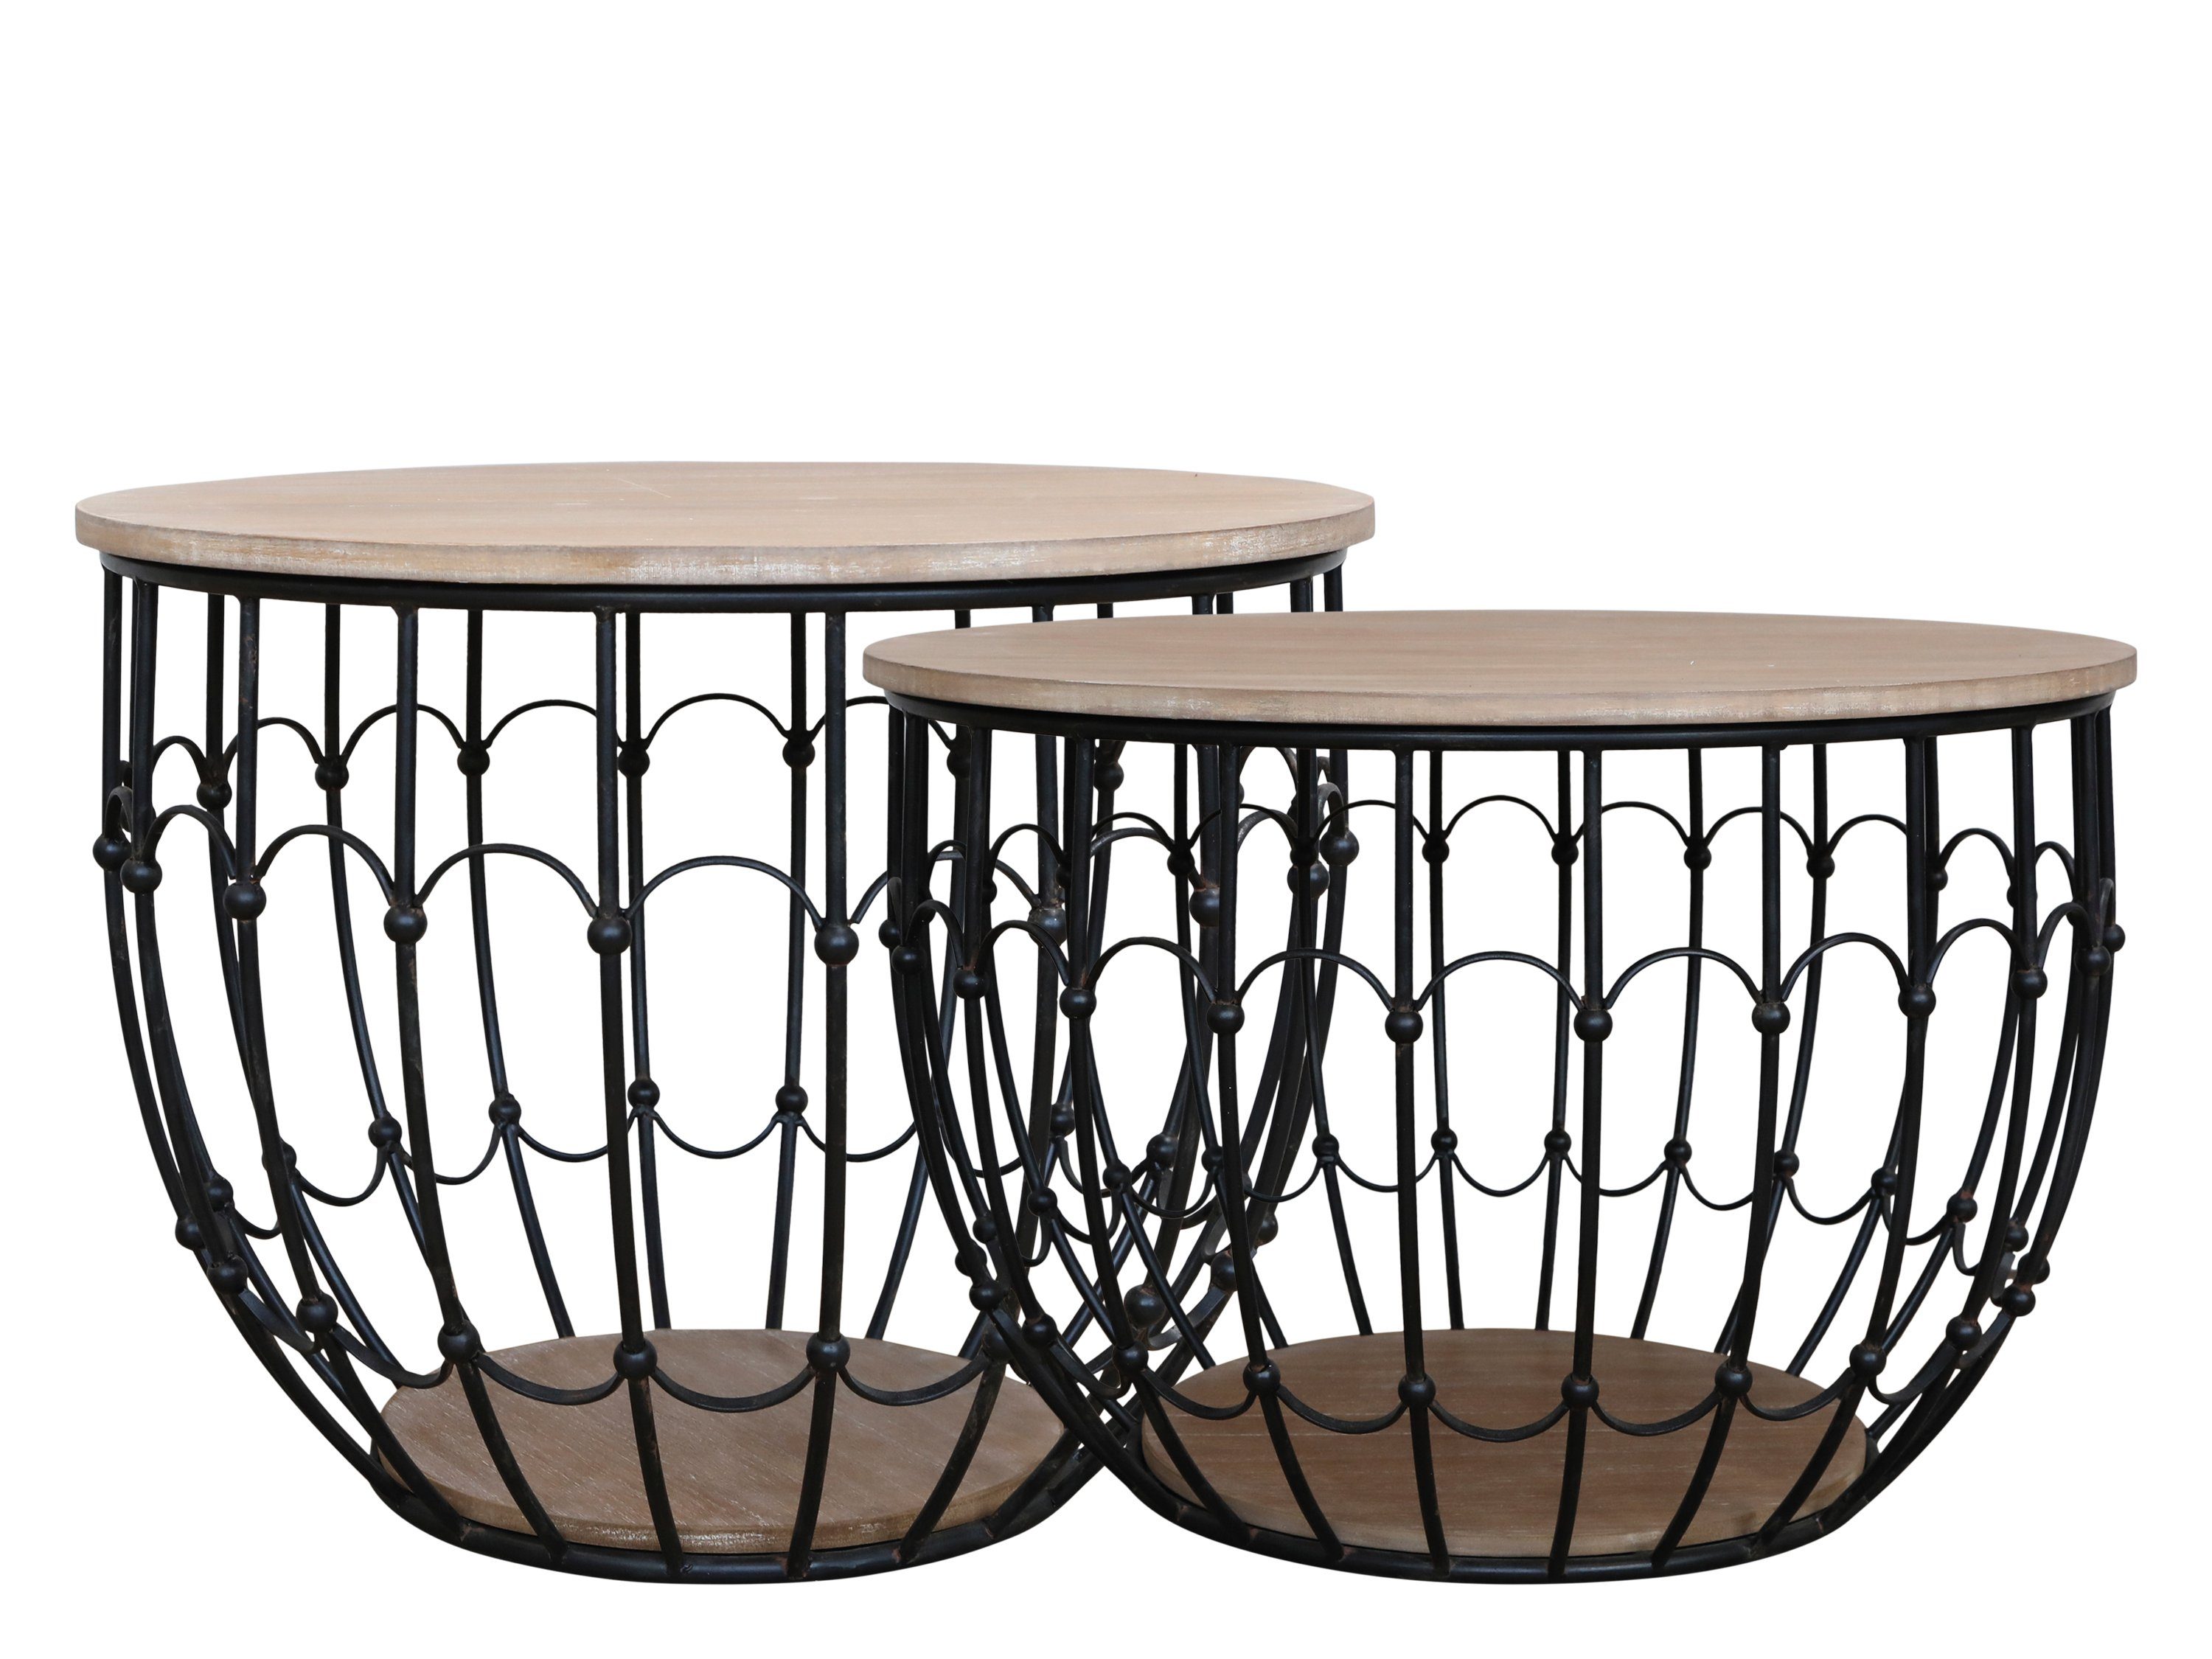 Markenwarenshop-Style Beistelltisch 2x Beistelltisch Sofatisch Tisch Schwarz Holzdeckel Chic Antique